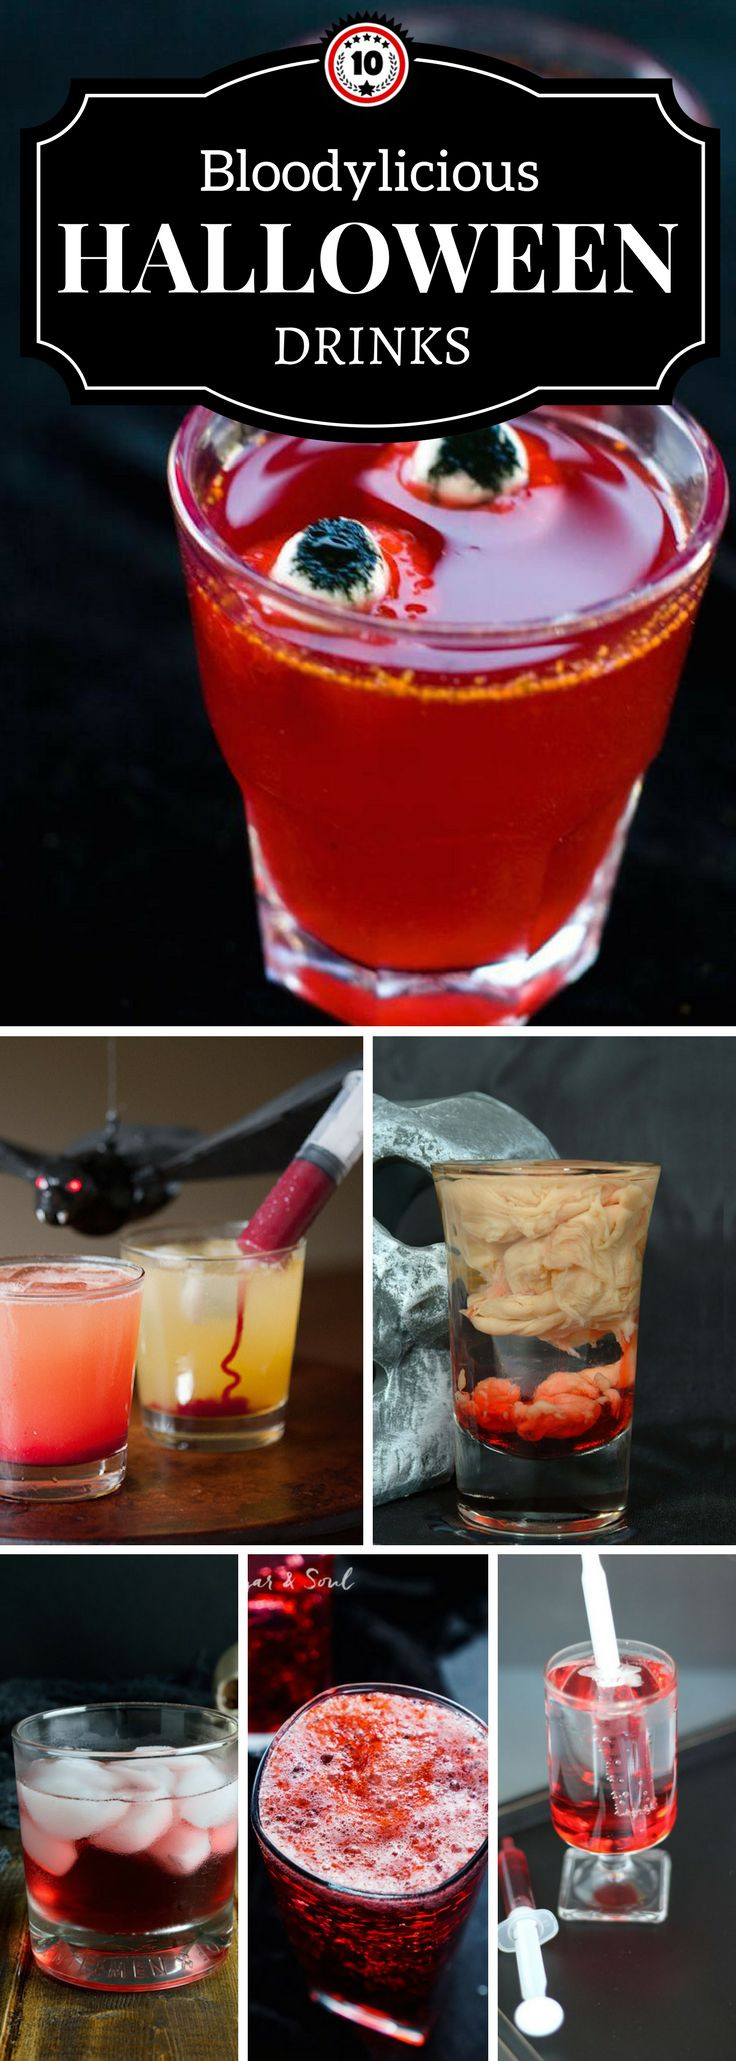 Halloween Mix Drinks
 Best 25 Halloween drinks ideas on Pinterest